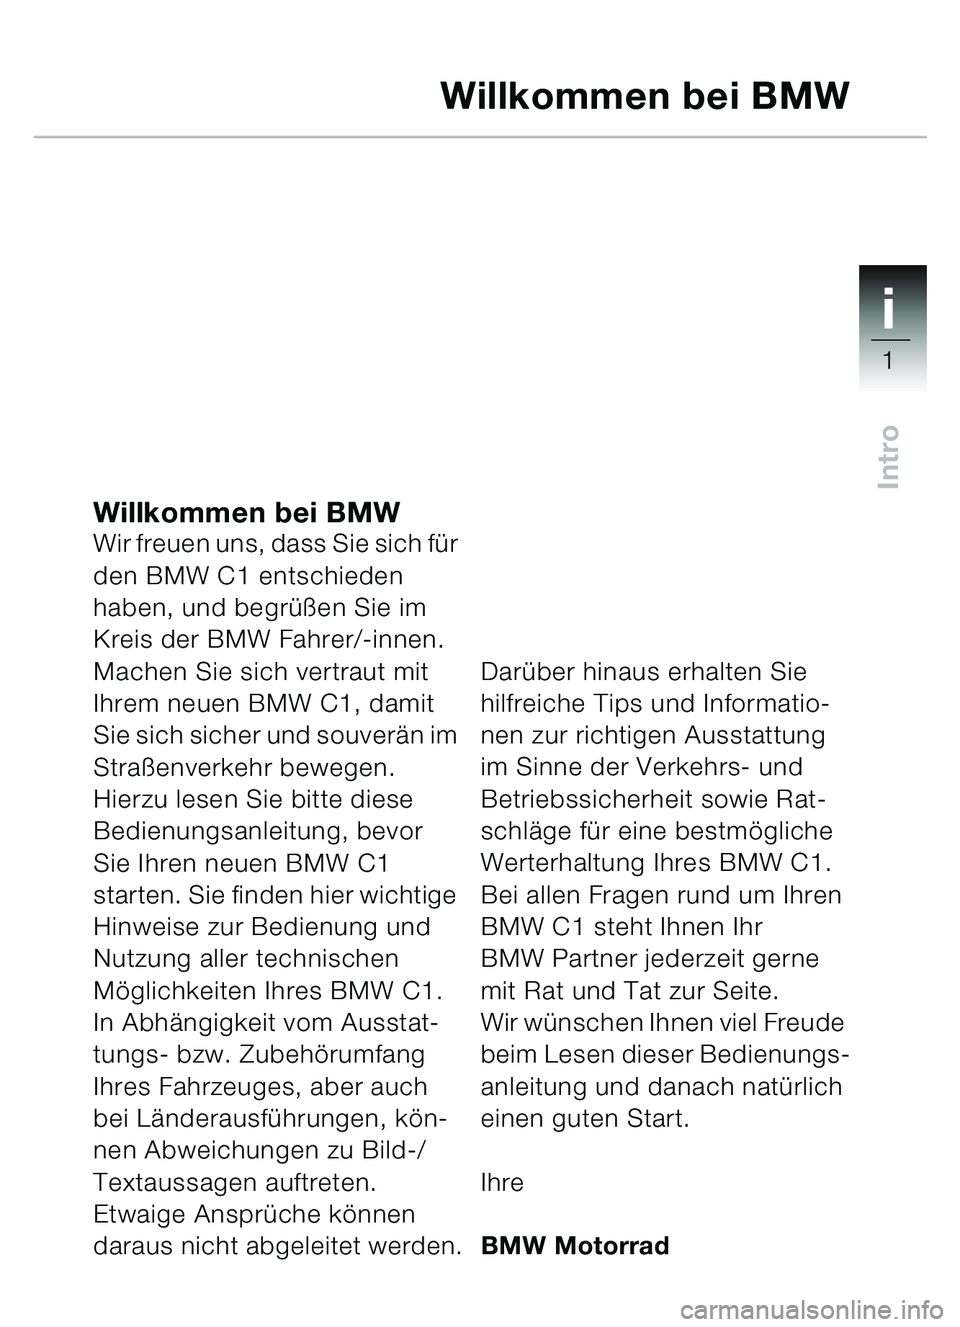 BMW MOTORRAD C1 2000  Betriebsanleitung (in German) 1i
1
Intro
Willkommen bei BMWWir freuen uns, dass Sie sich für 
den BMW C1 entschieden 
haben, und begrüßen Sie im 
Kreis der BMW Fahrer/-innen.
Machen Sie sich vertraut mit 
Ihrem neuen BMW C1, da